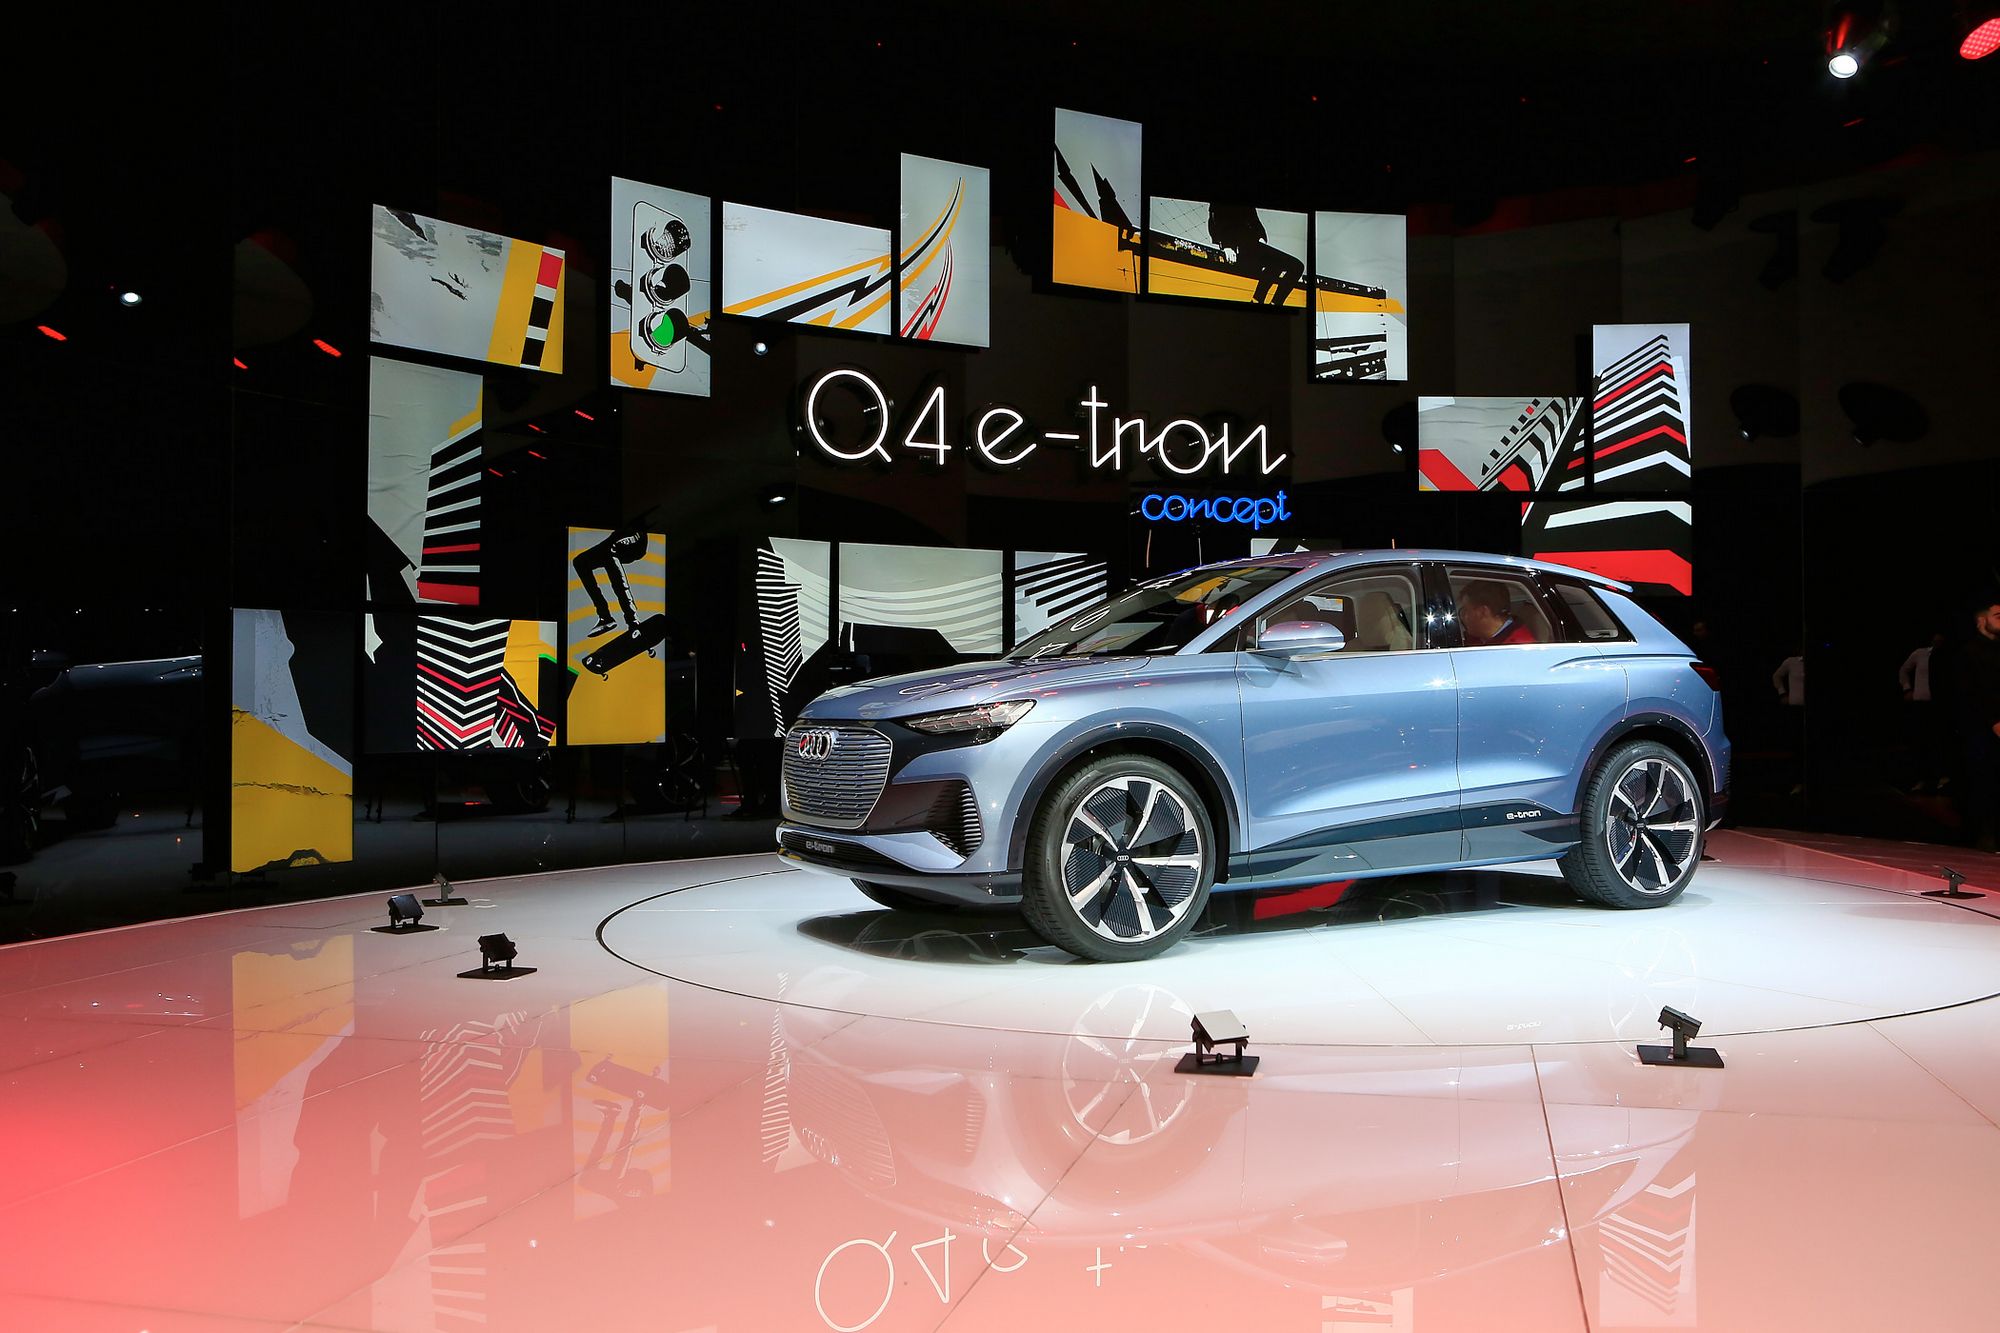 Xe điện Audi Q4 e-tron “chào sân” tại Triển lãm Ôtô Geneva 2019